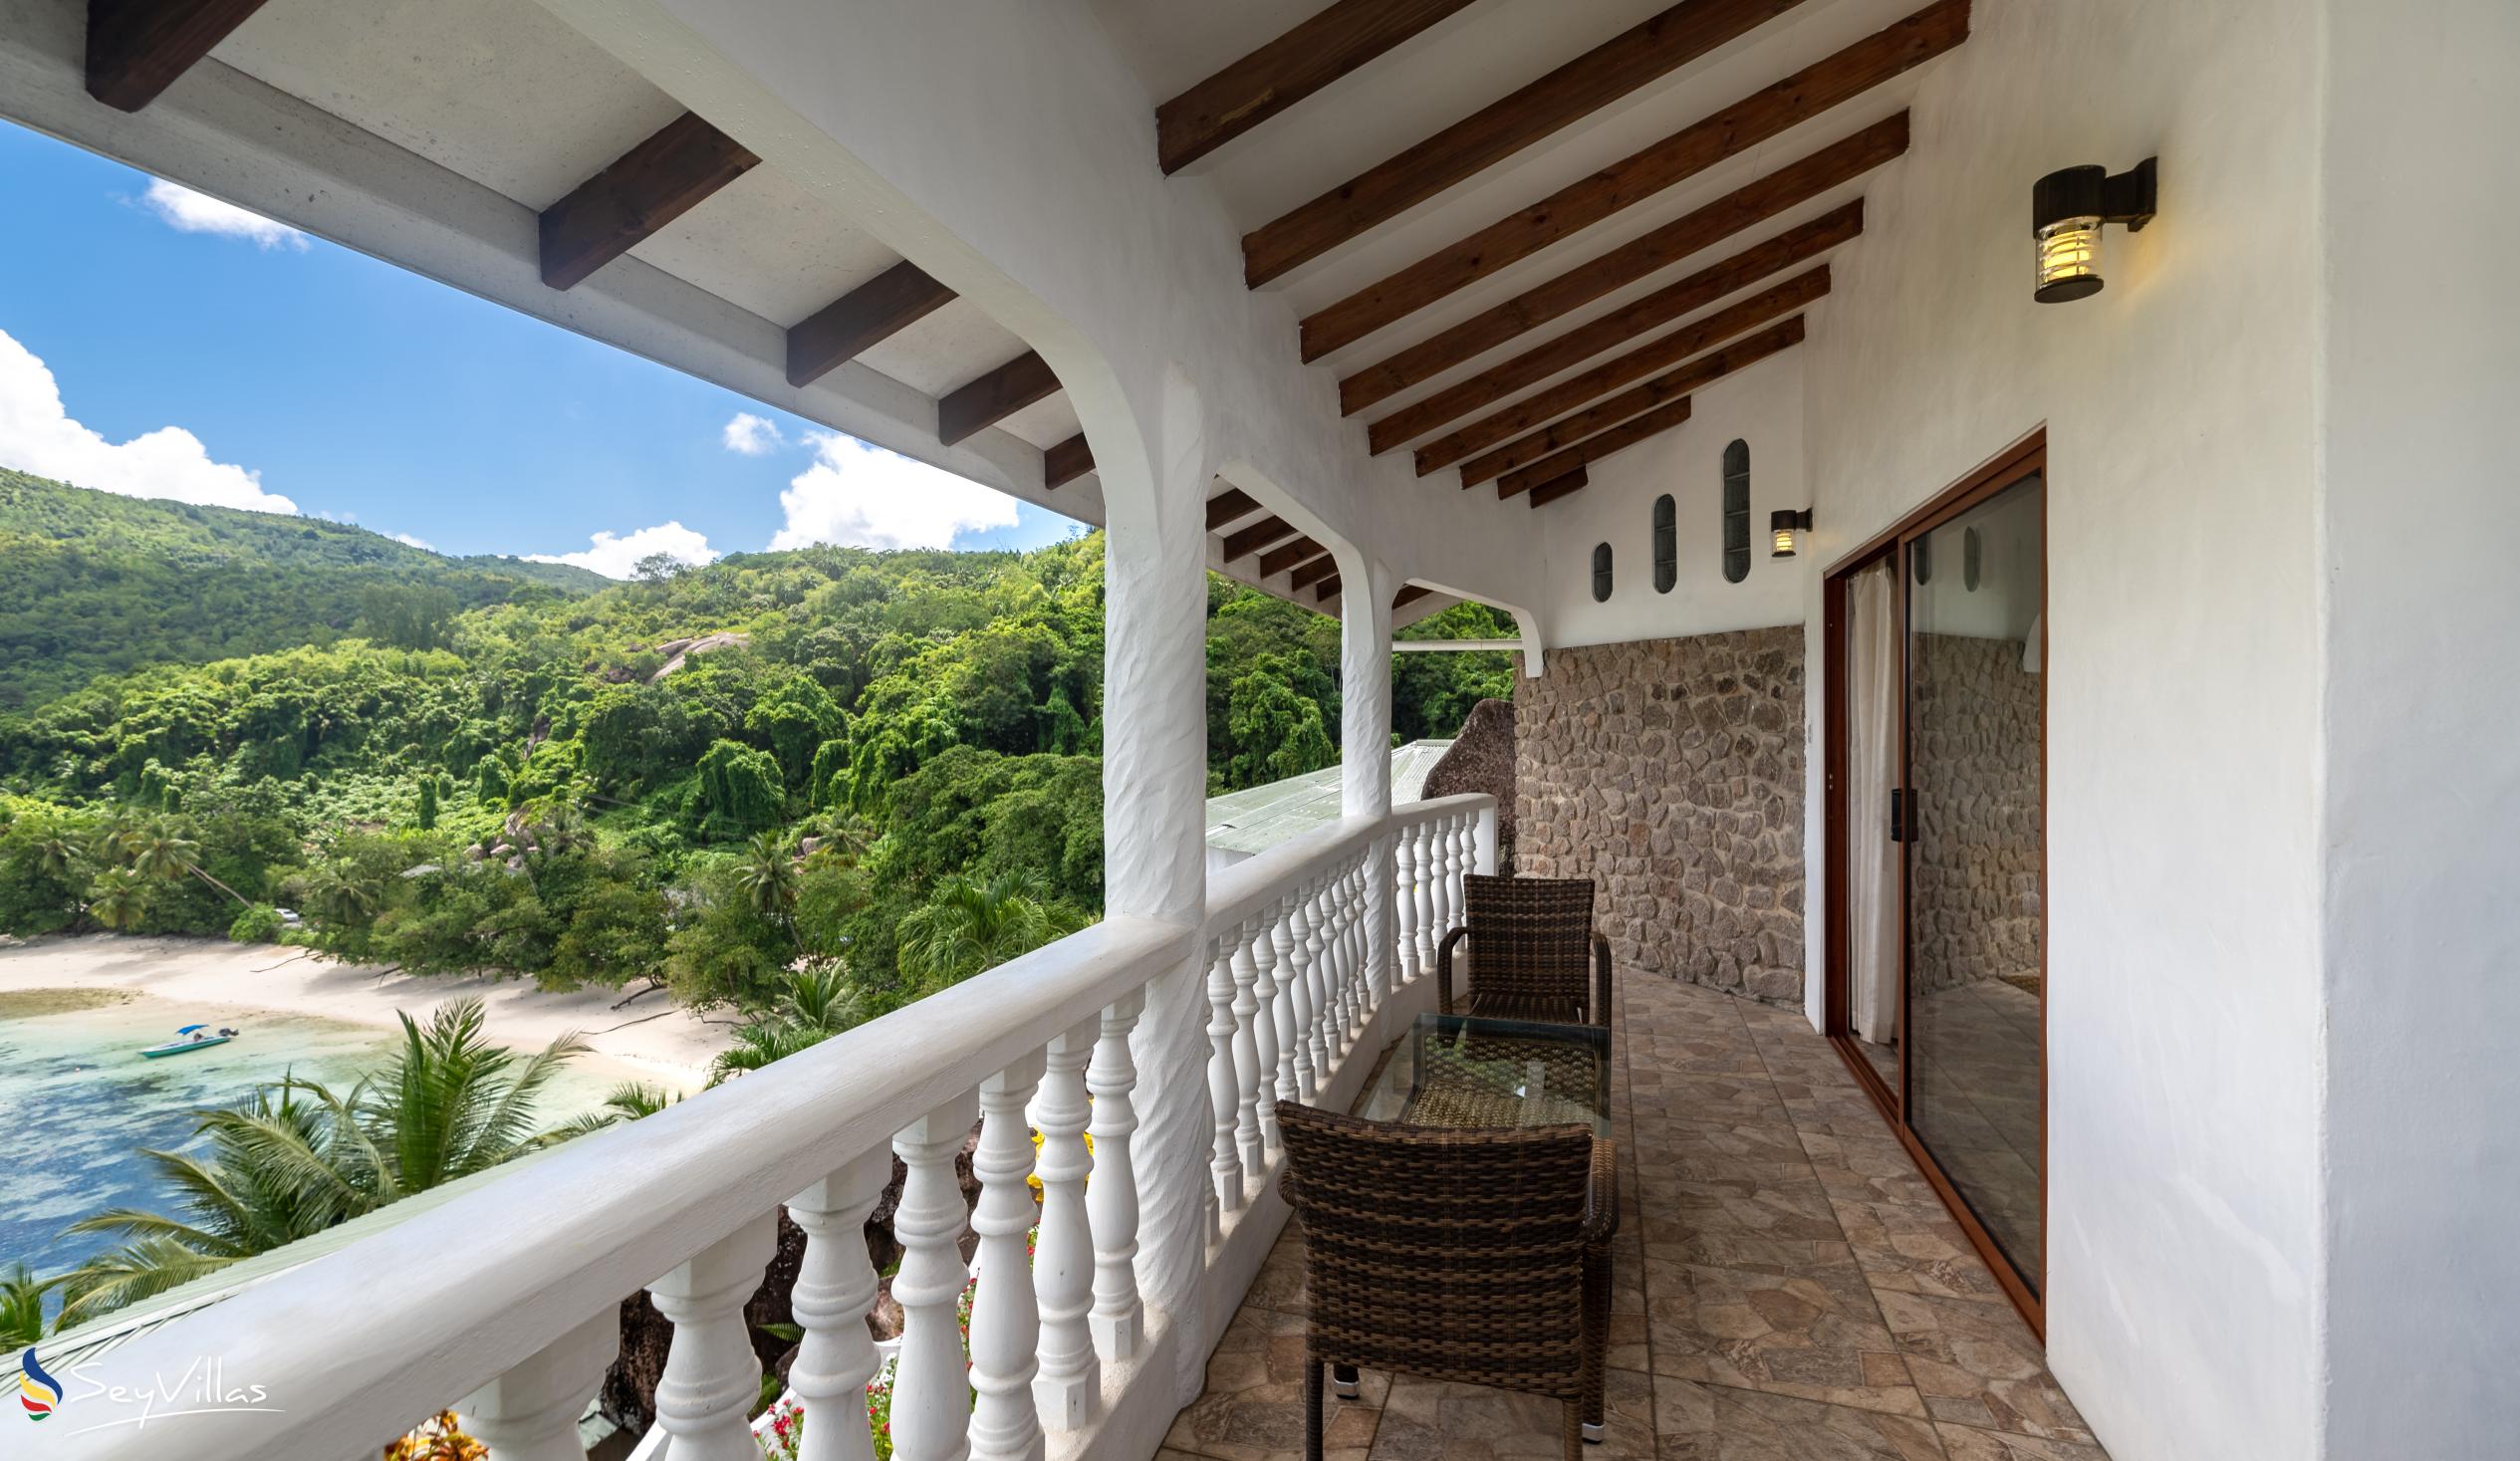 Photo 73: Lazare Picault Hotel - Honeymoon Suite - Mahé (Seychelles)